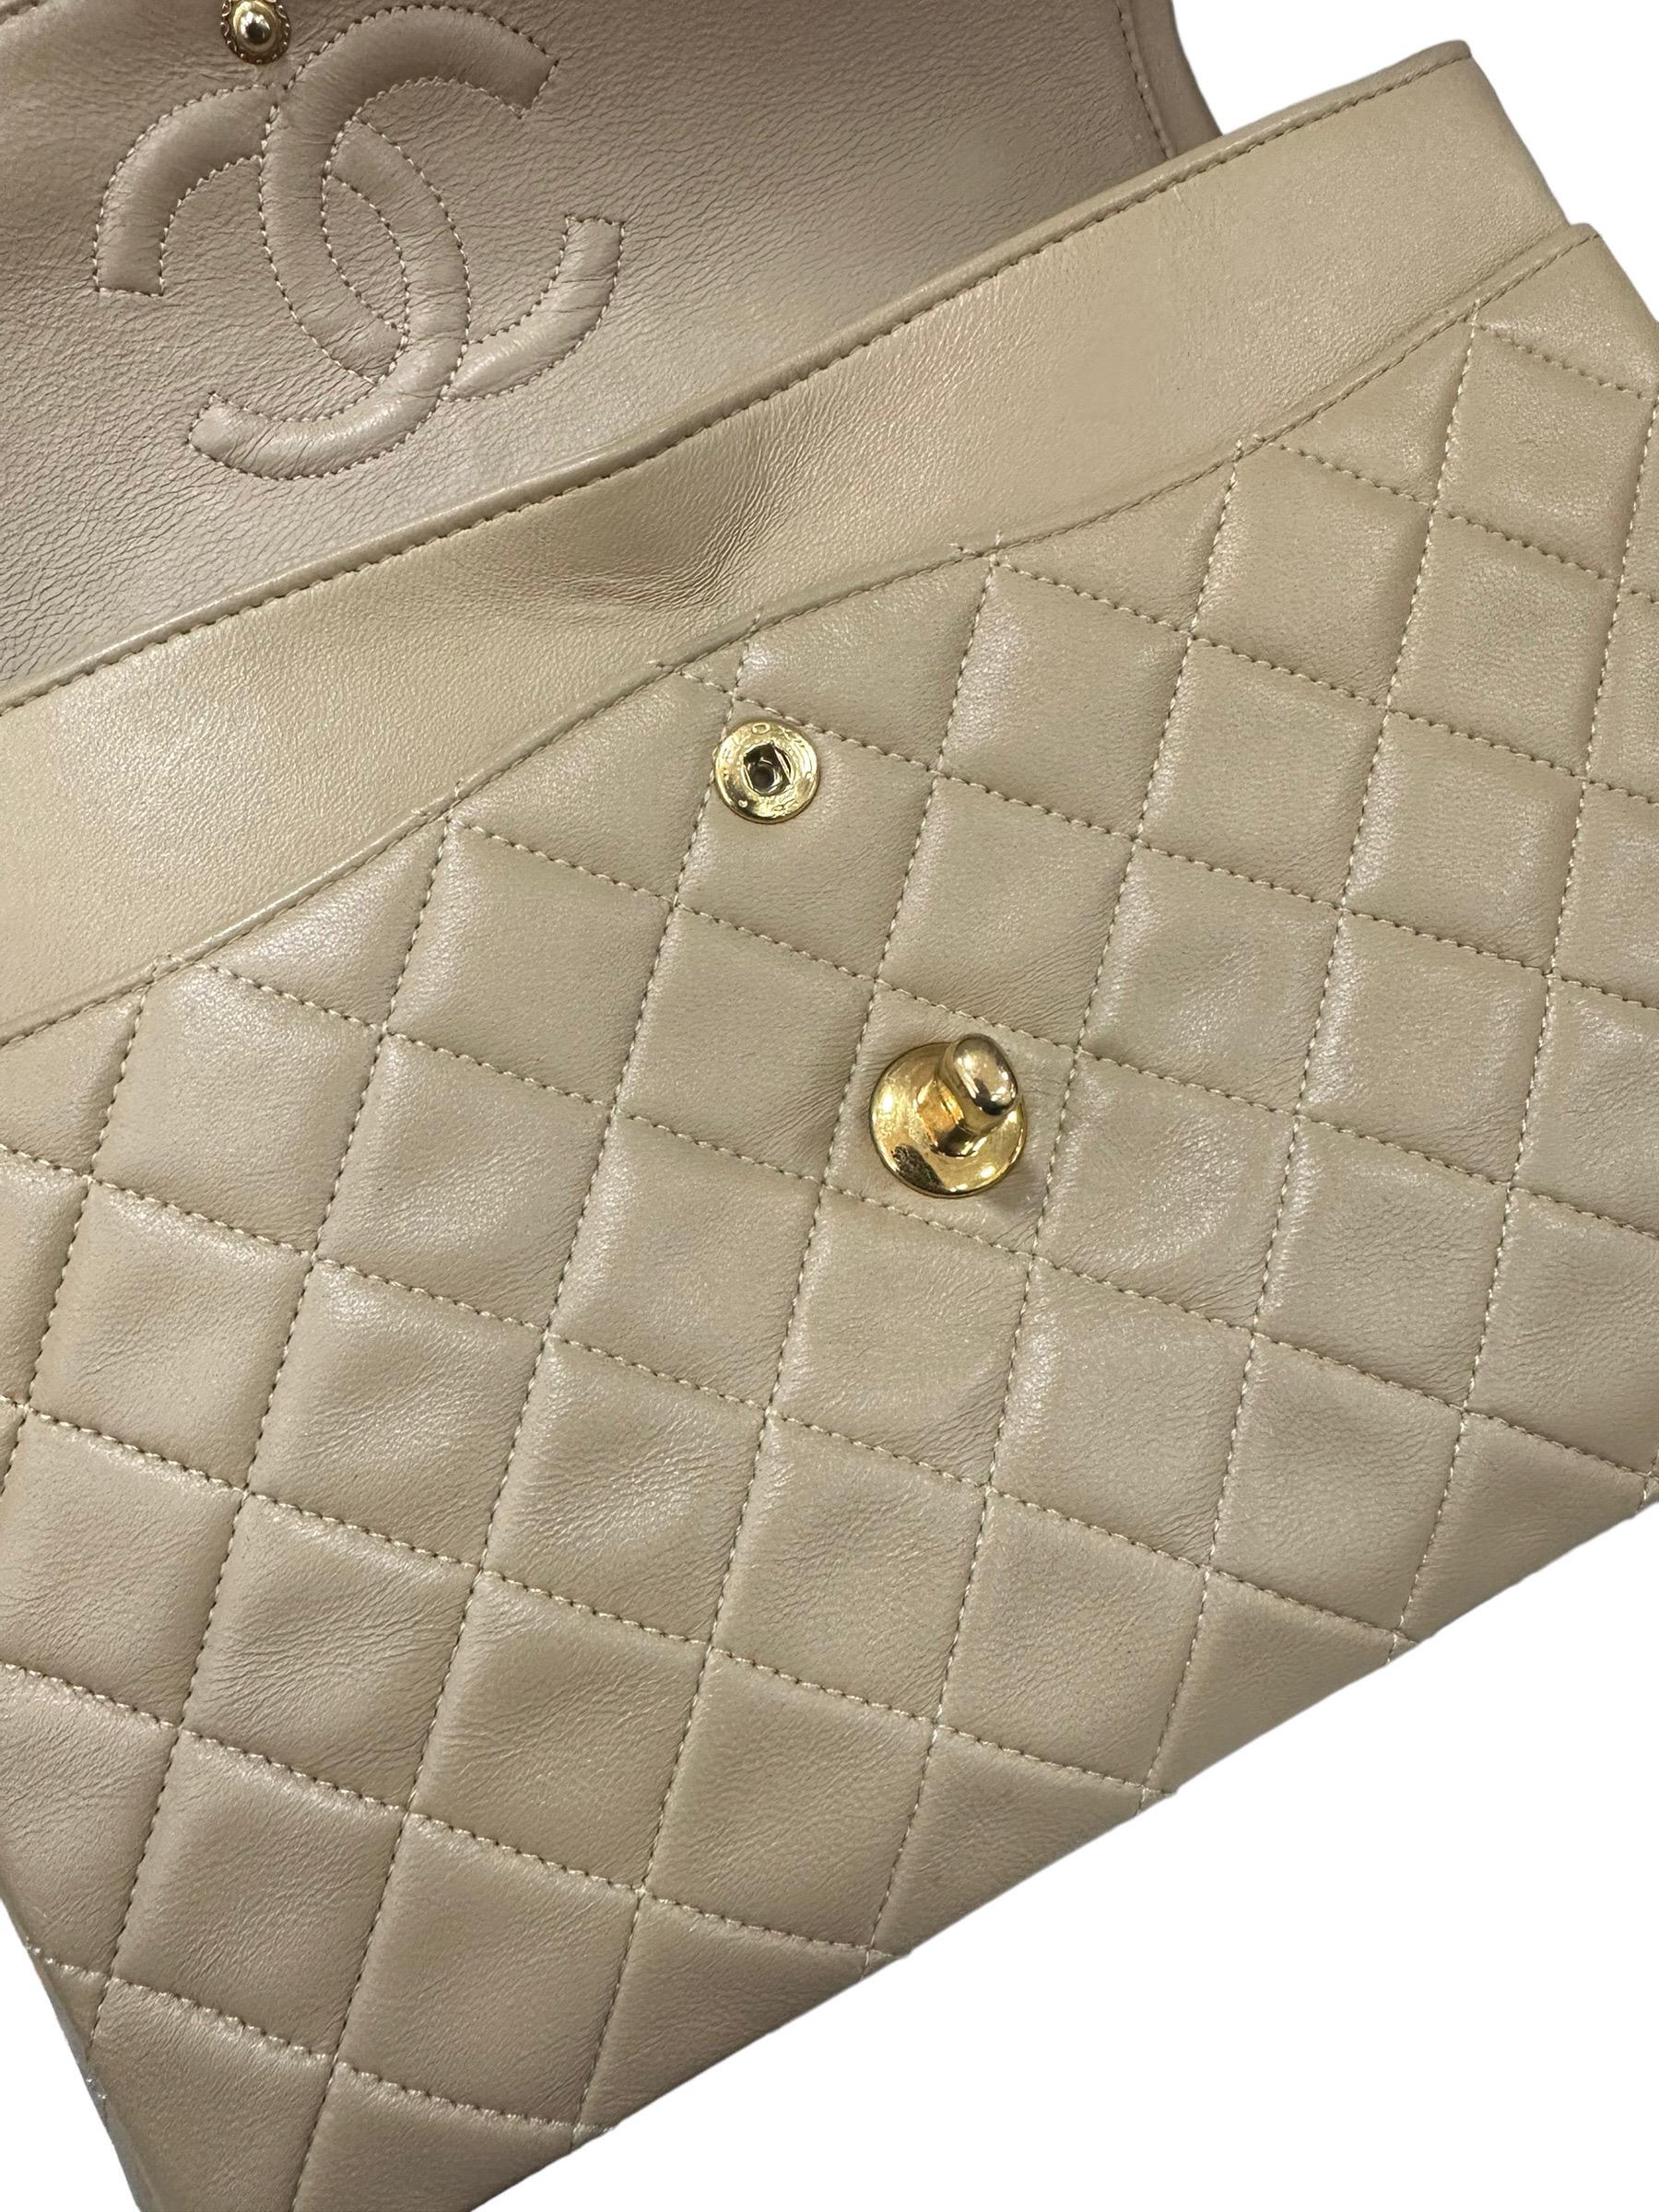 ‘90 Chanel Flap Vintage Beige Leather Shoulder Bag For Sale 12